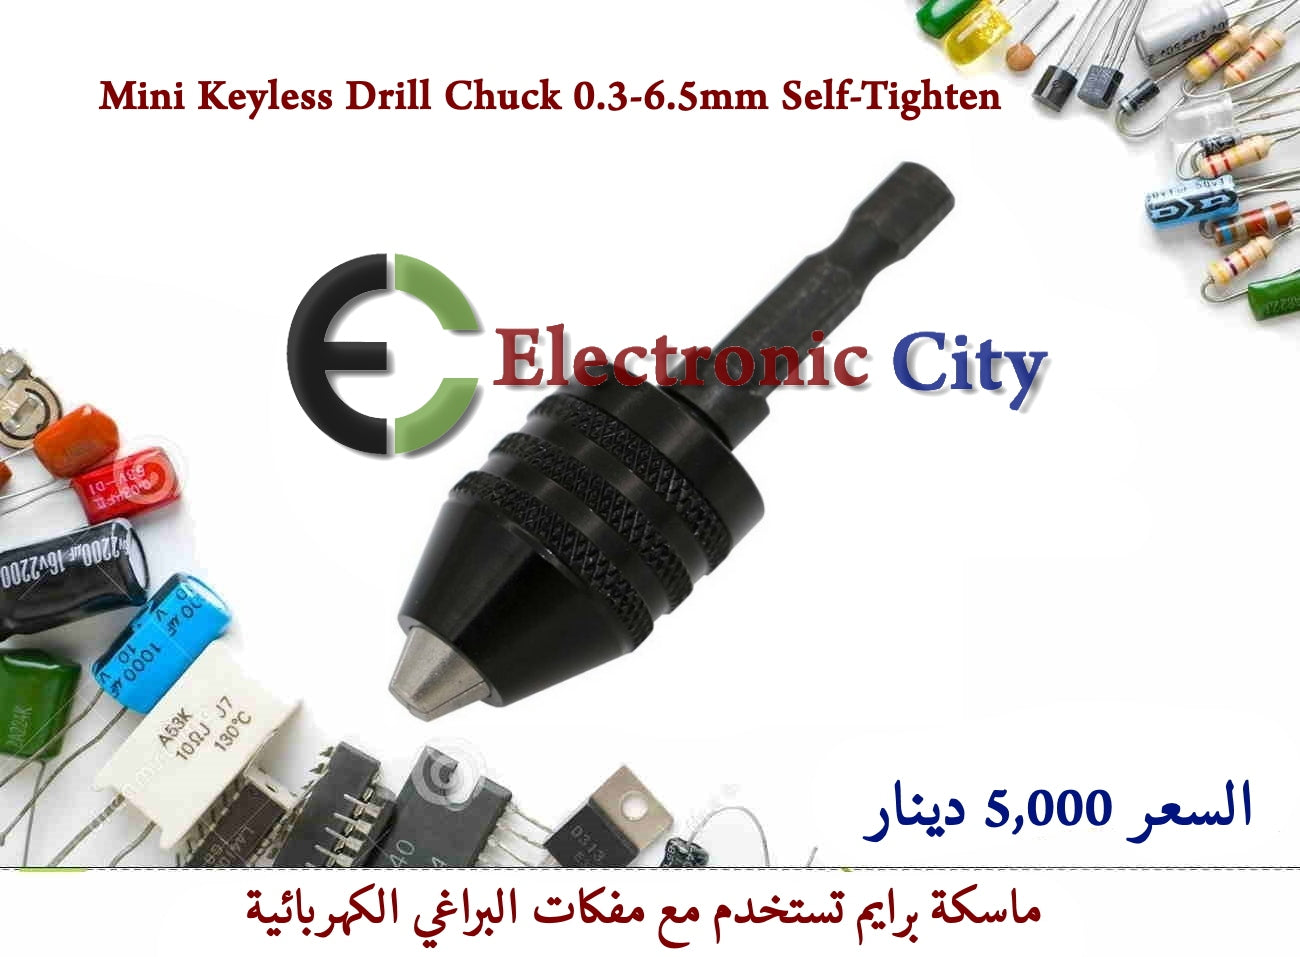 Mini Keyless Drill Chuck 0.3-6.5mm Self-Tighten